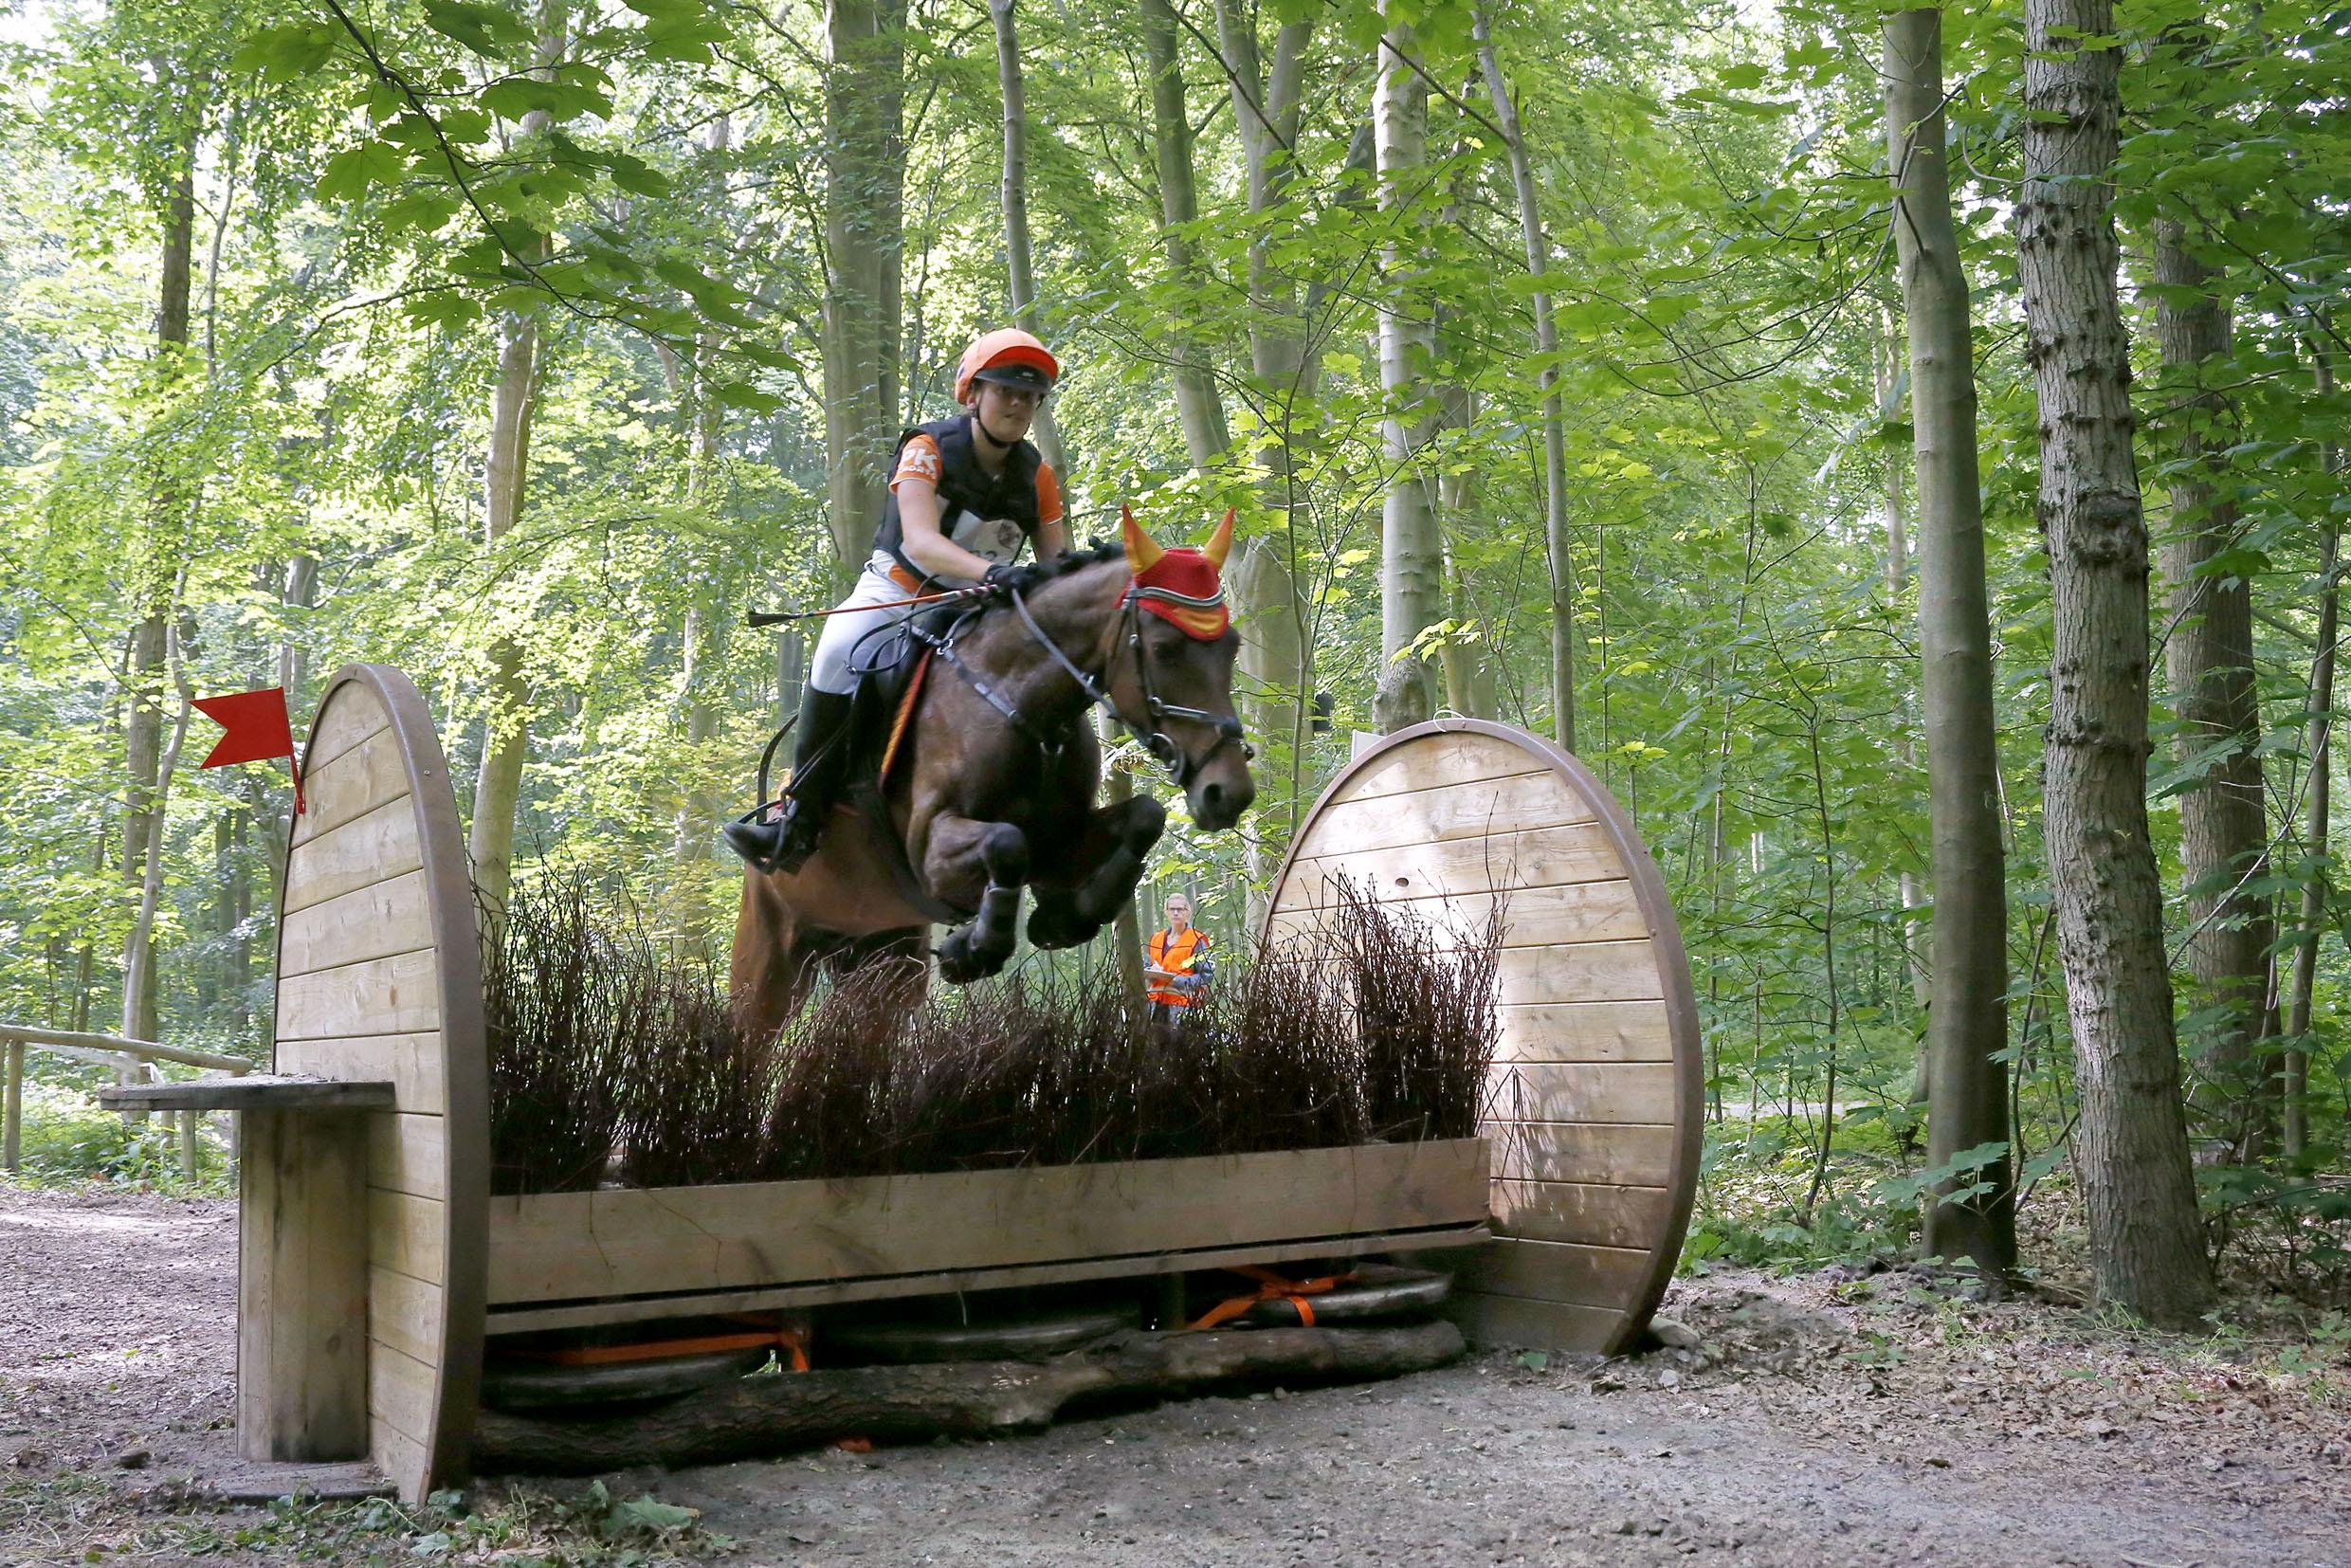 Paarden zetten angst opzij in jaarlijkse Dijkgatboscross. Ook stonden te | Noordhollandsdagblad